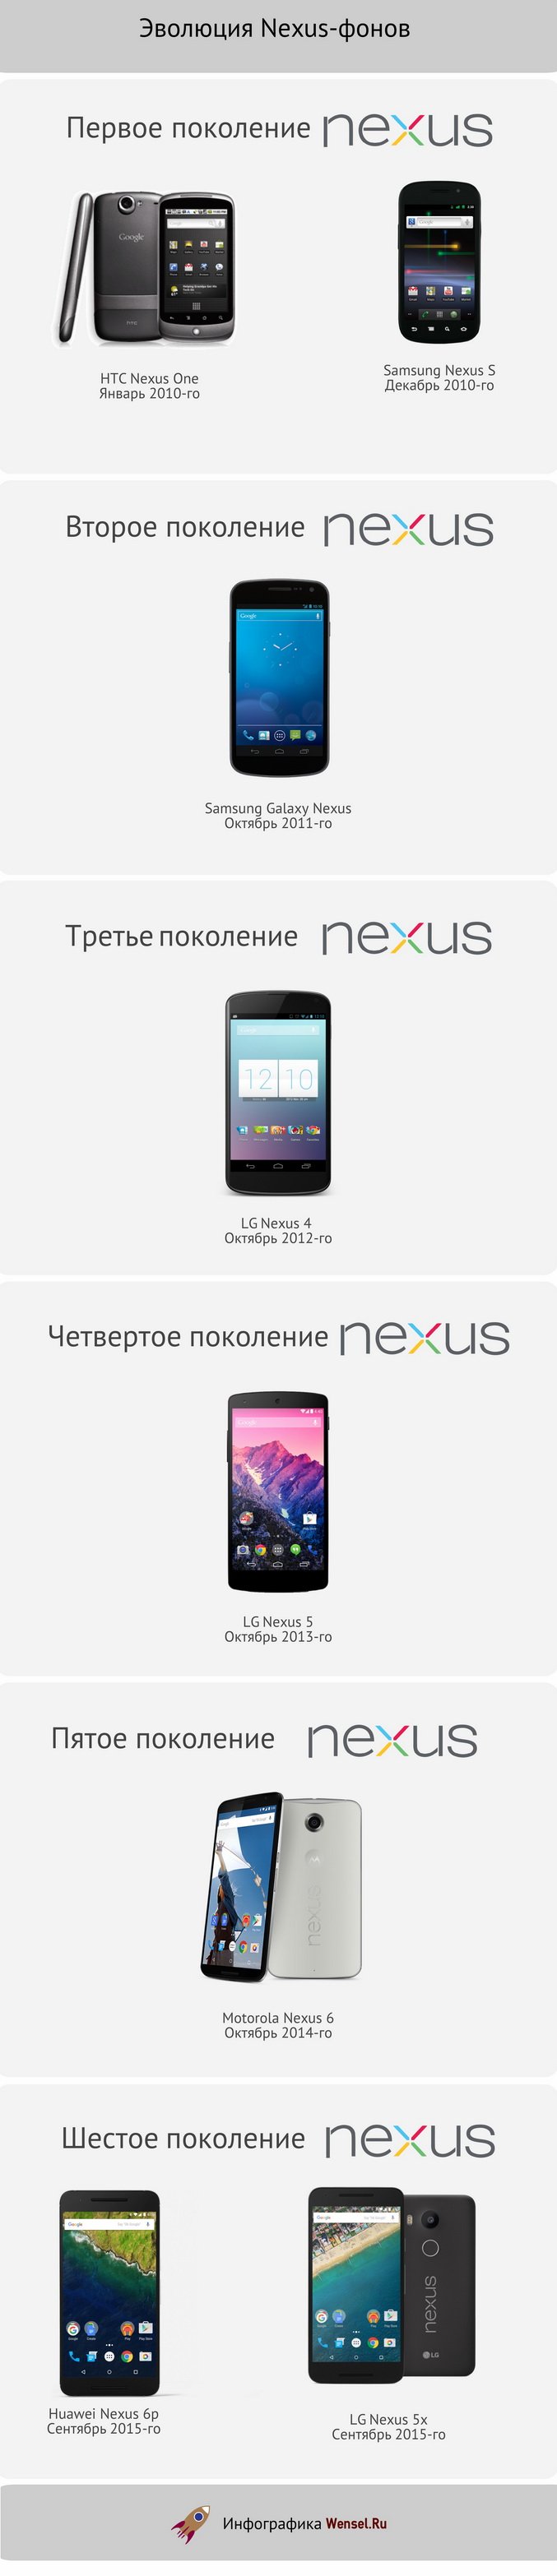 Эволюция смартфонов Google Nexus от HTC Nexus One до LG Nexus 5x и Nexus 6p